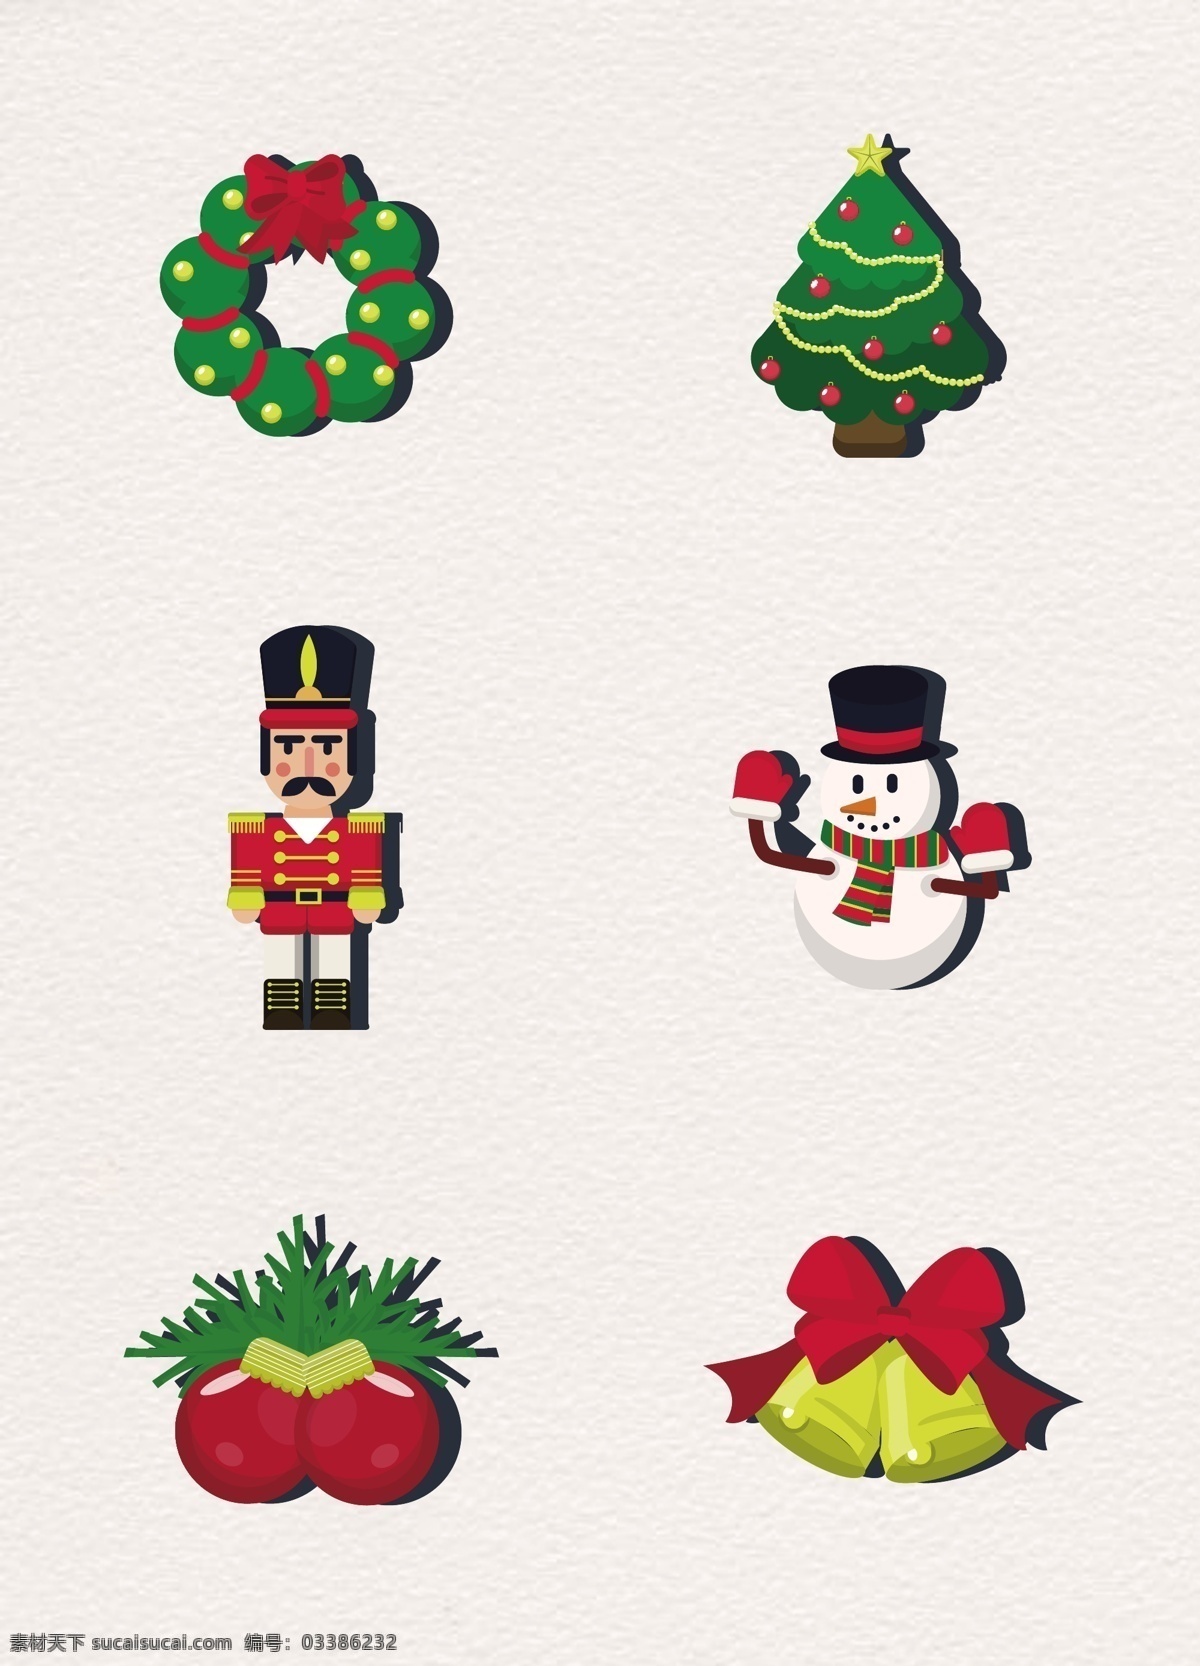 彩色 卡通 圣诞 元素 创意 圣诞节 圣诞树 矢量 圣诞元素 花环 雪人 吊球 铃铛